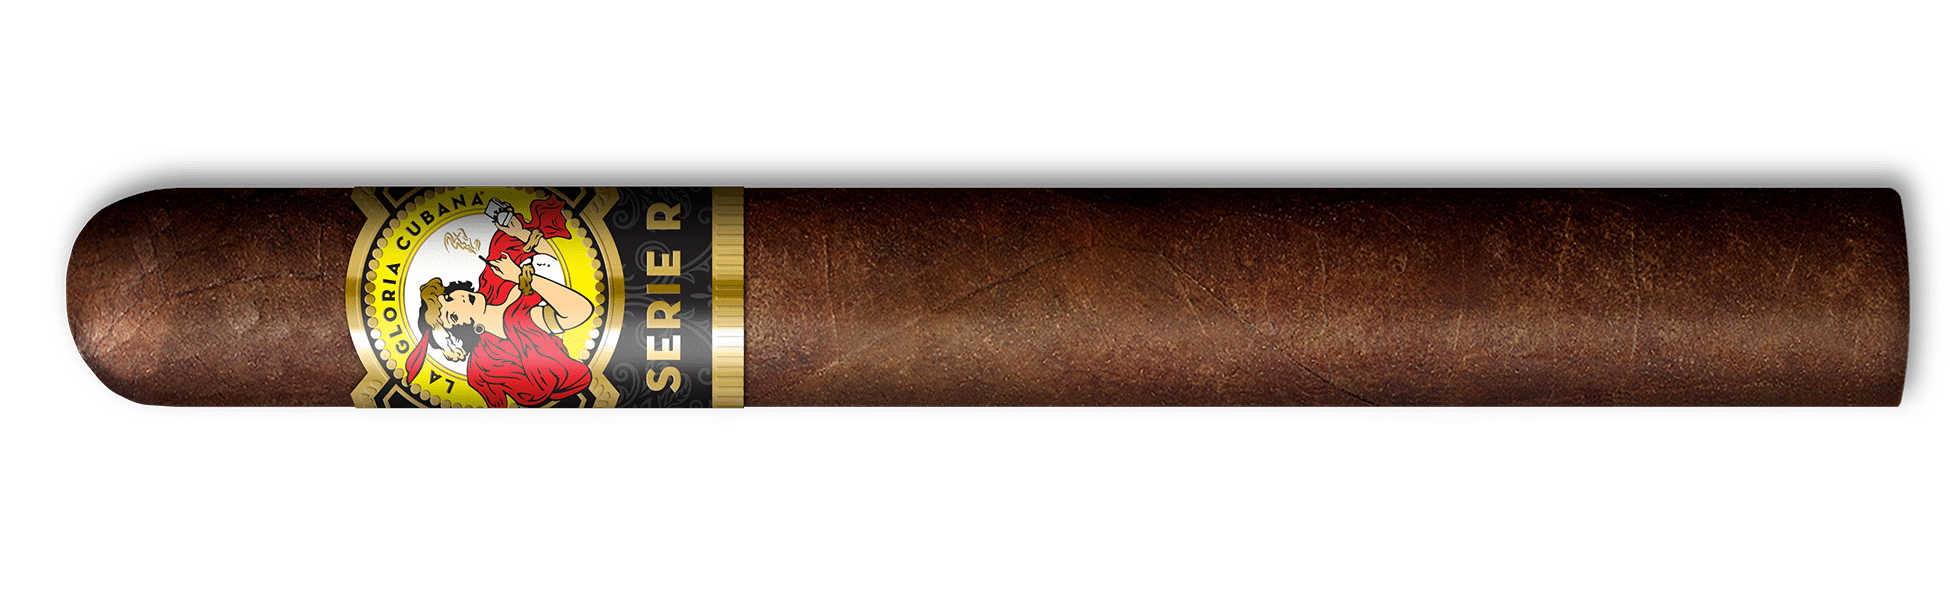 La Gloria Cubana Adds Serie R No 8 - Cigar News